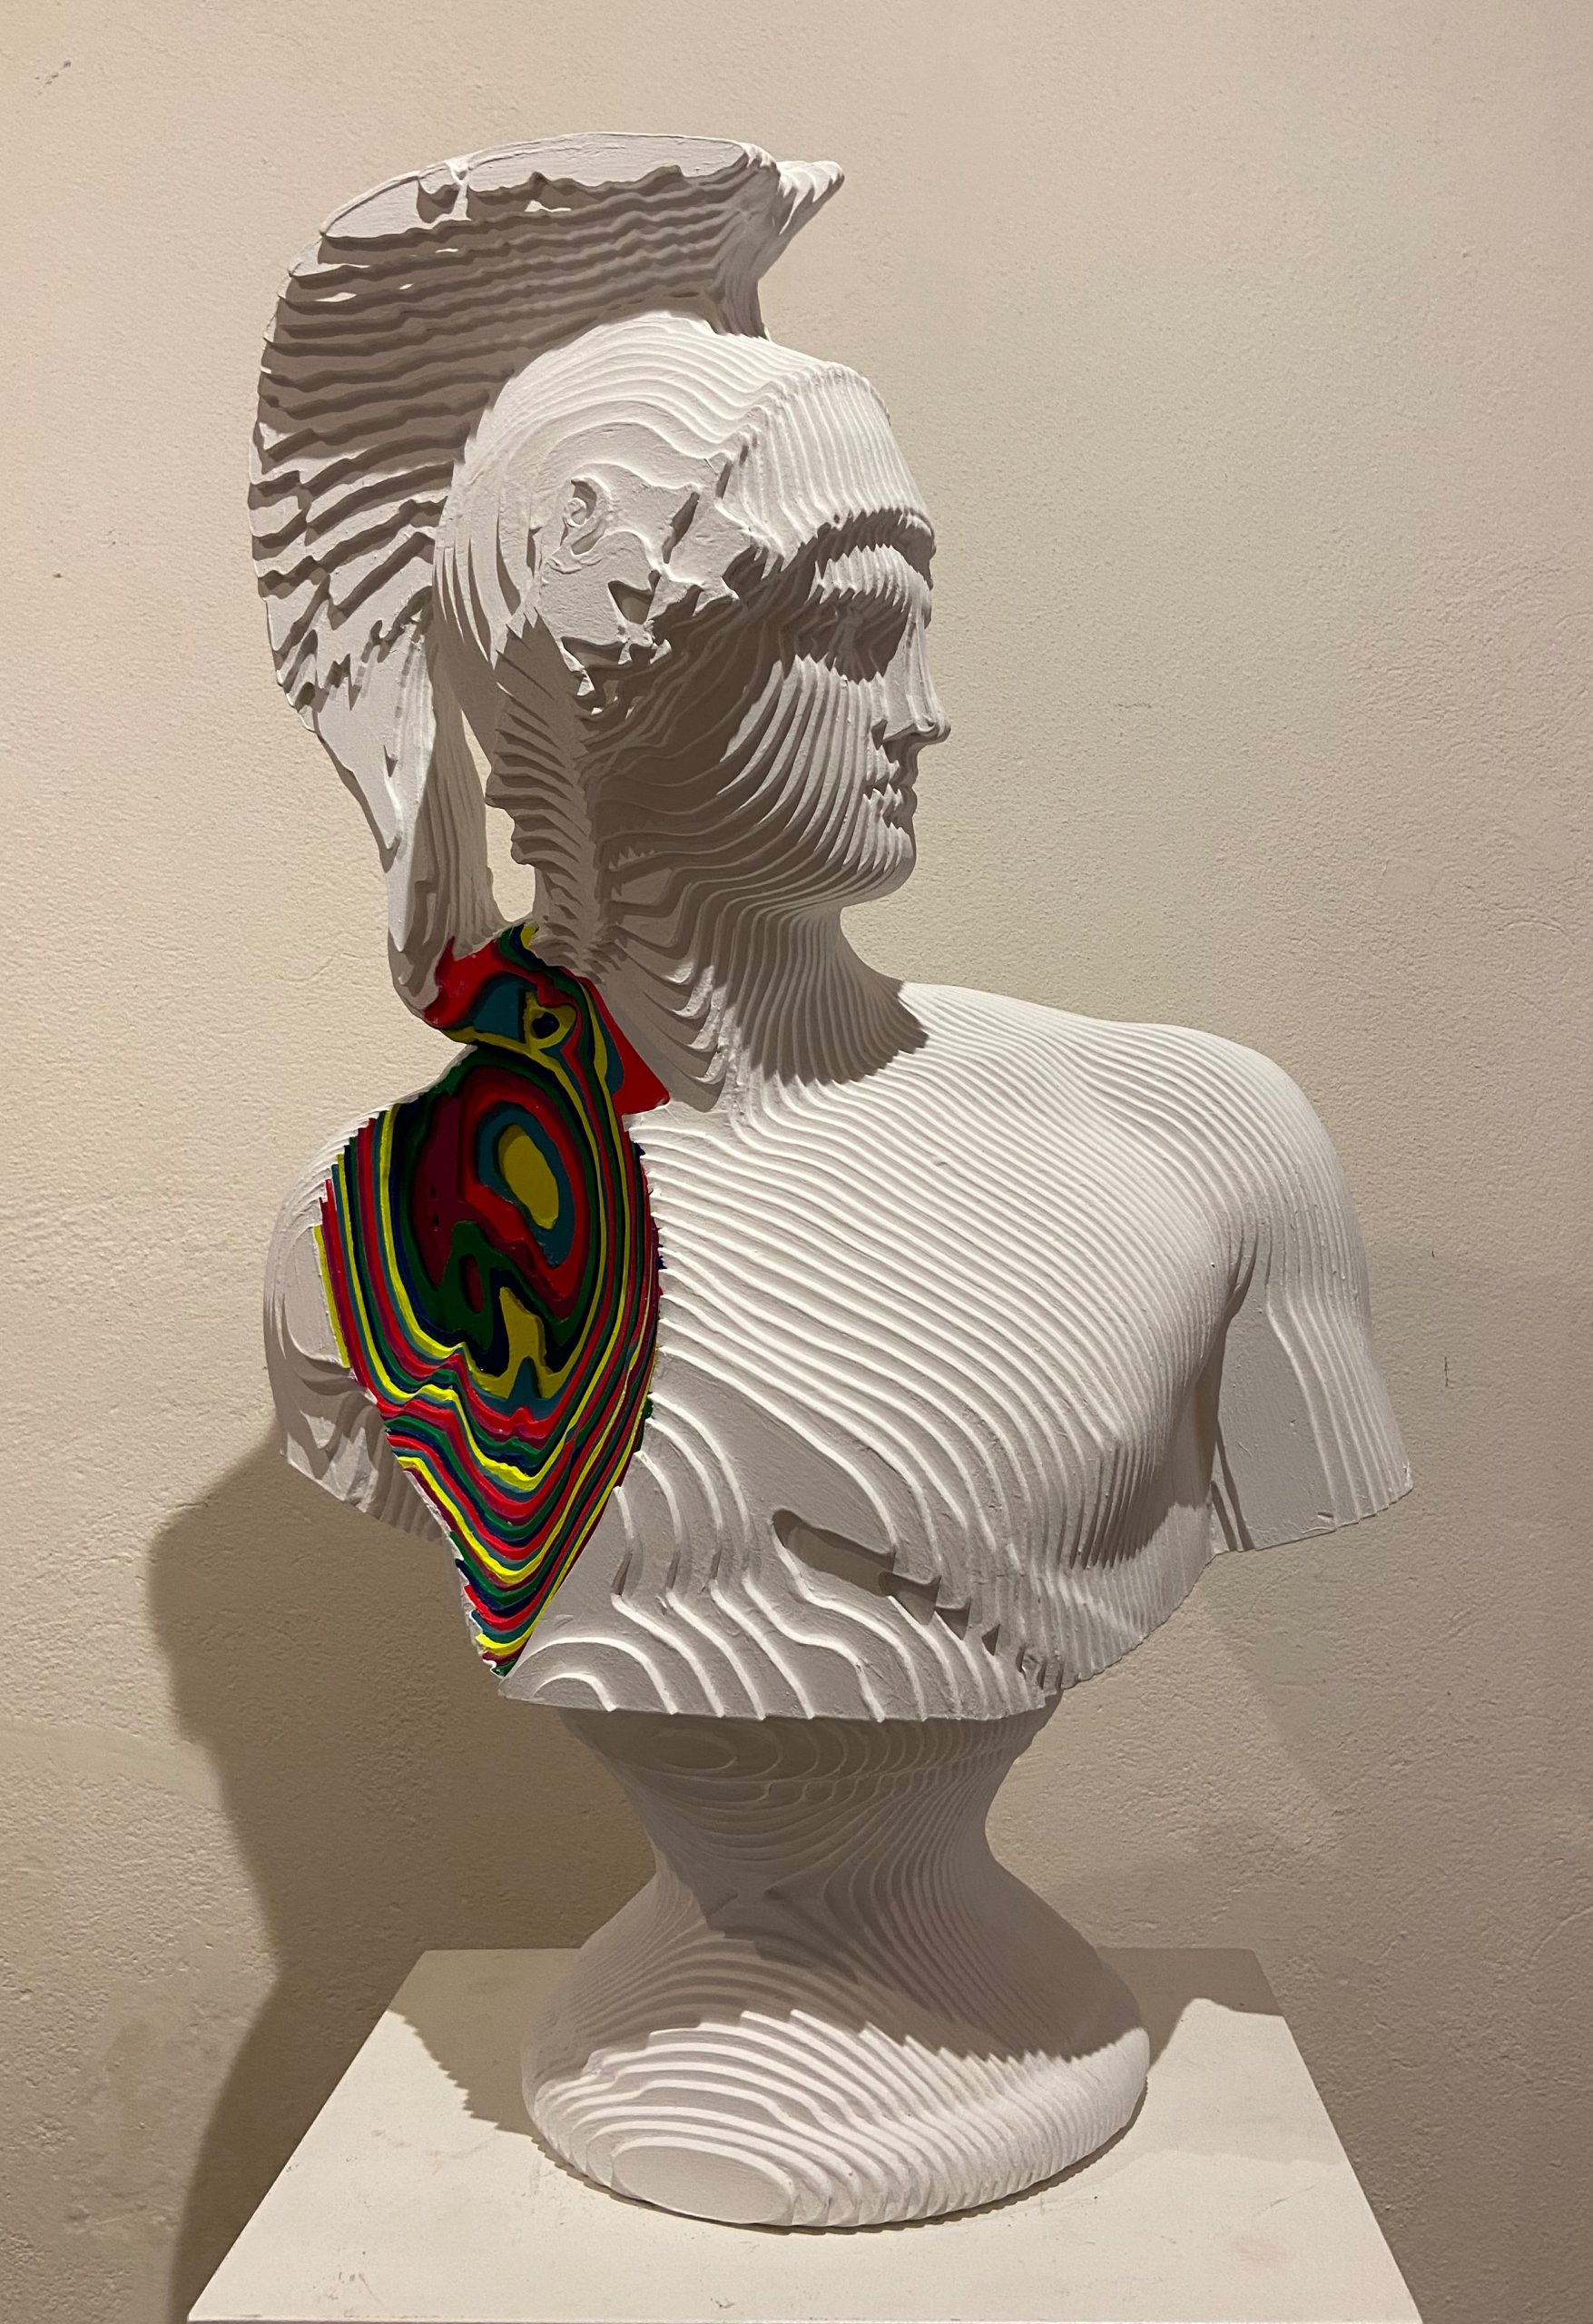 DANIELE FORTUNA “Warrior colormination” 2021, Acrilico su legno, cm. 70x42x28